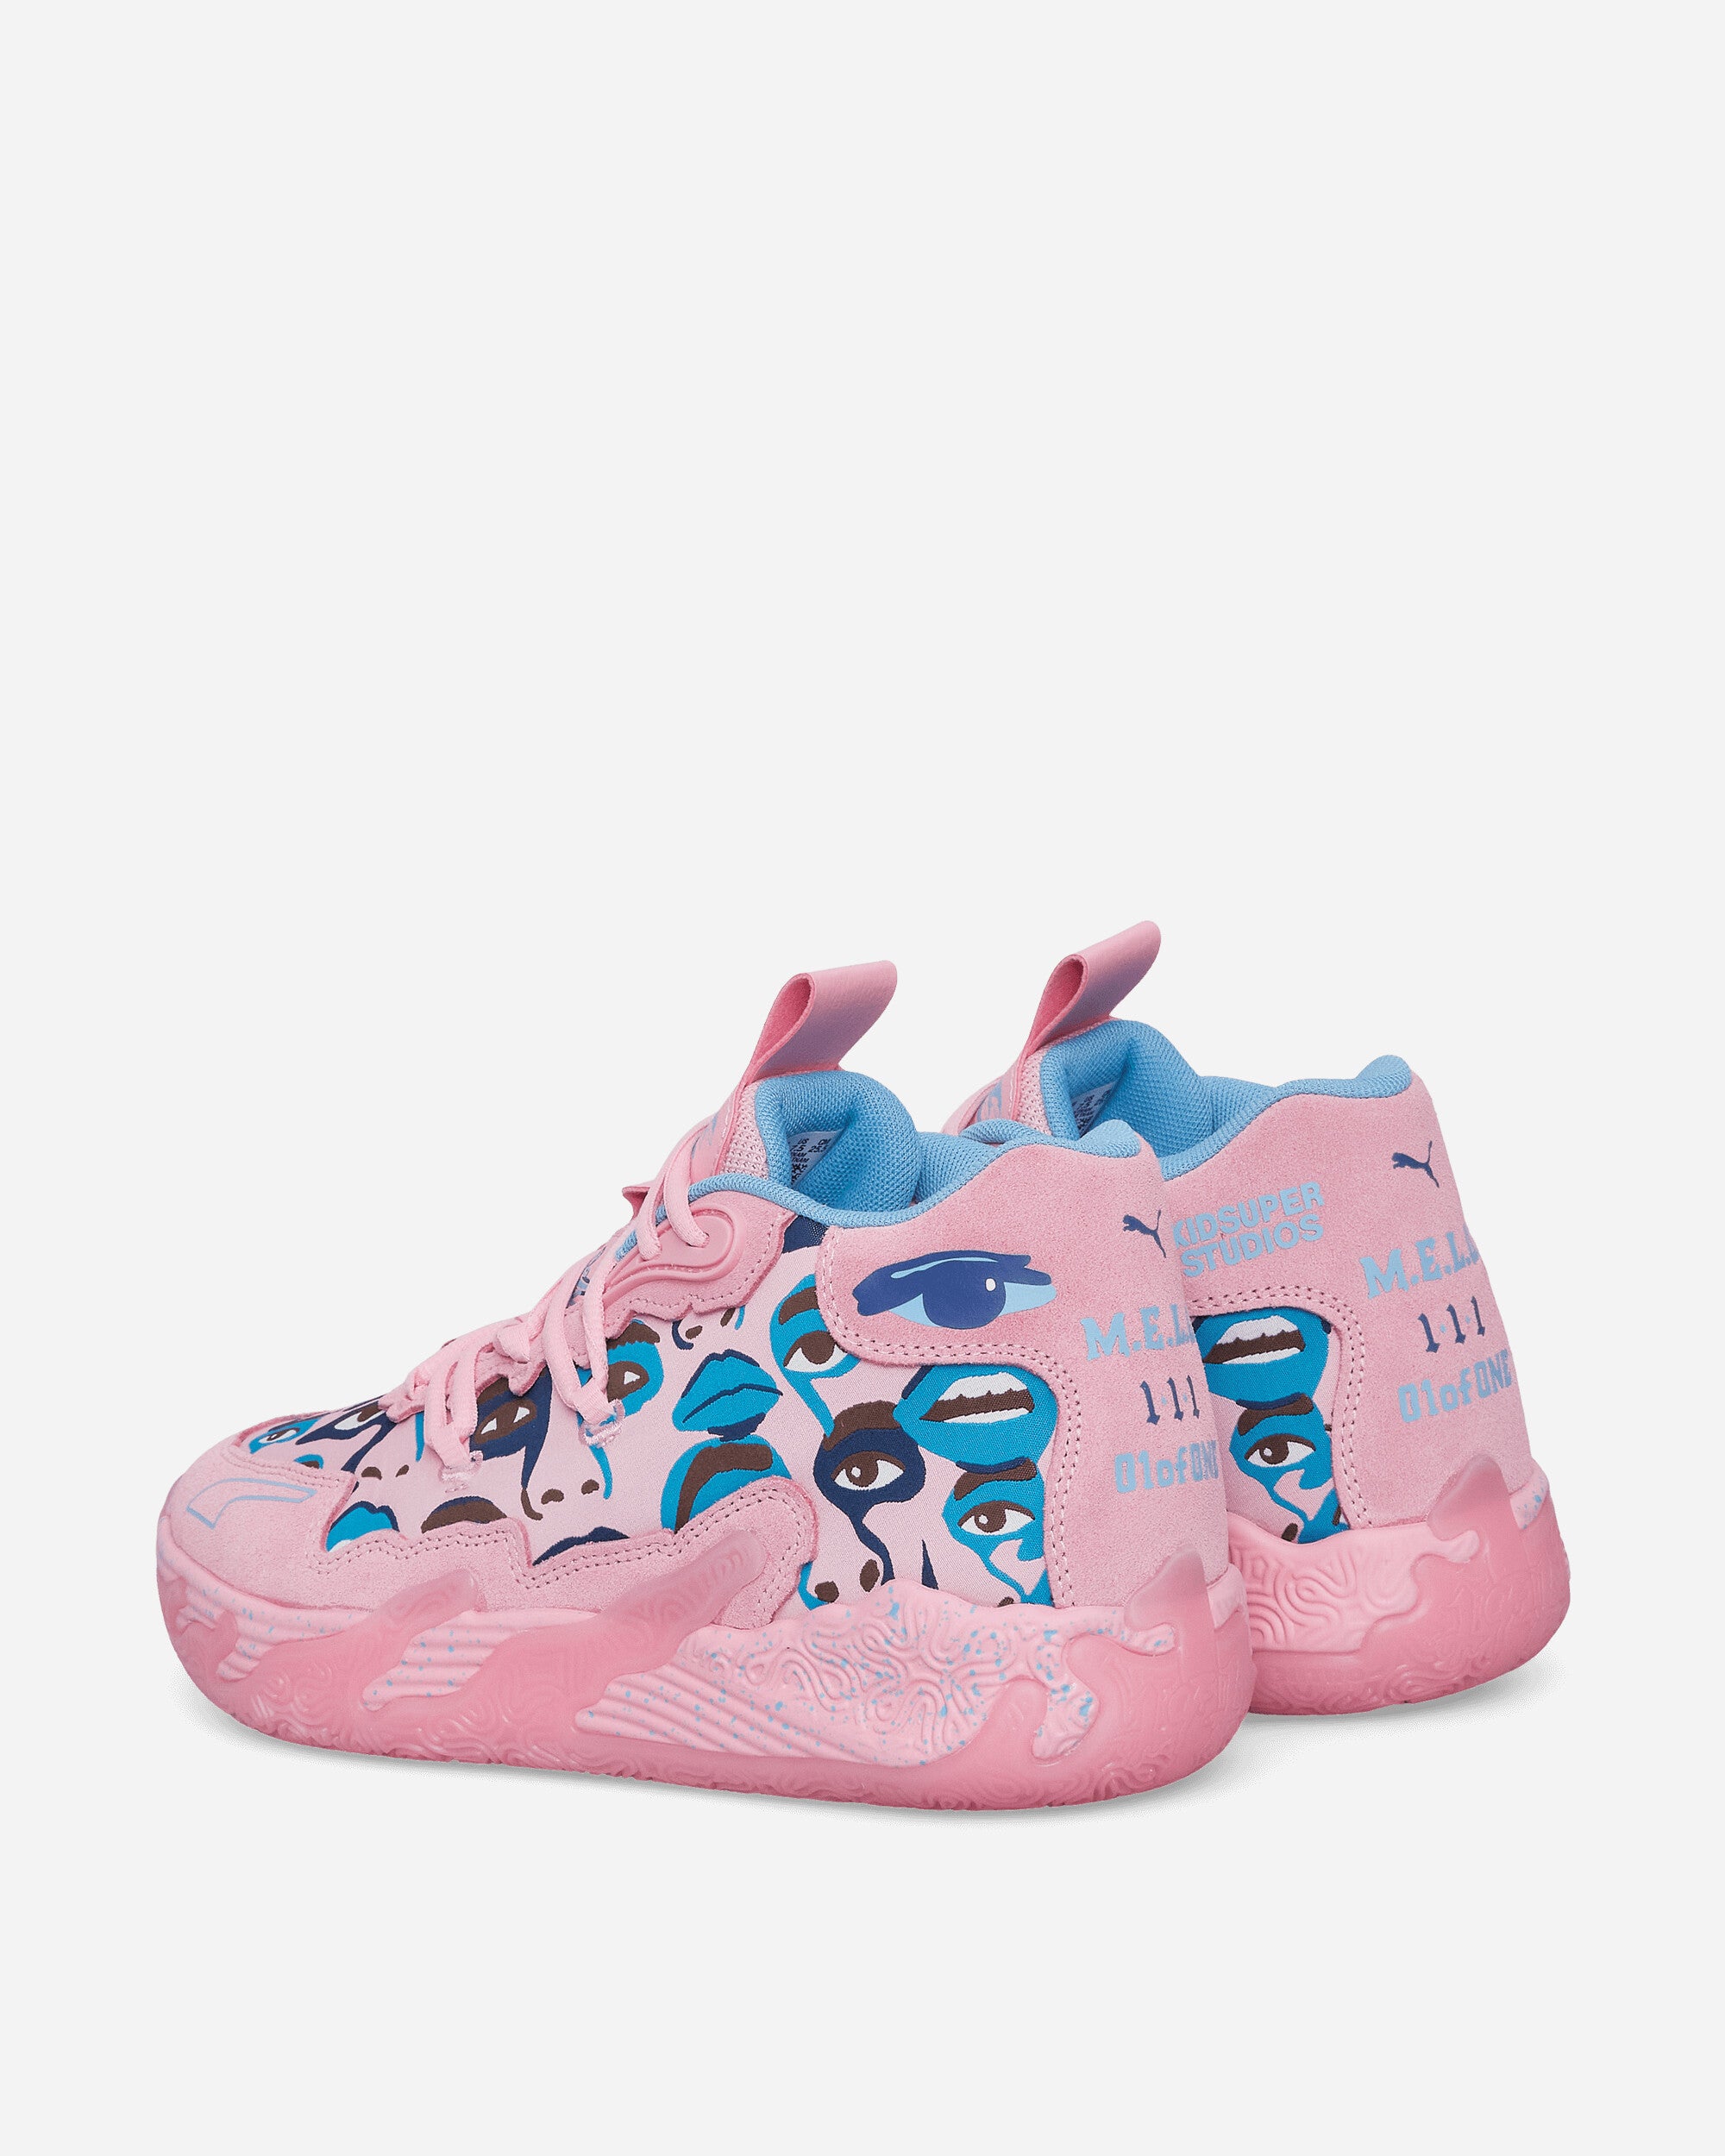 Puma Mb.03 Kid Super Pink Lilac/Team Light Blue Sneakers Low 379328-01